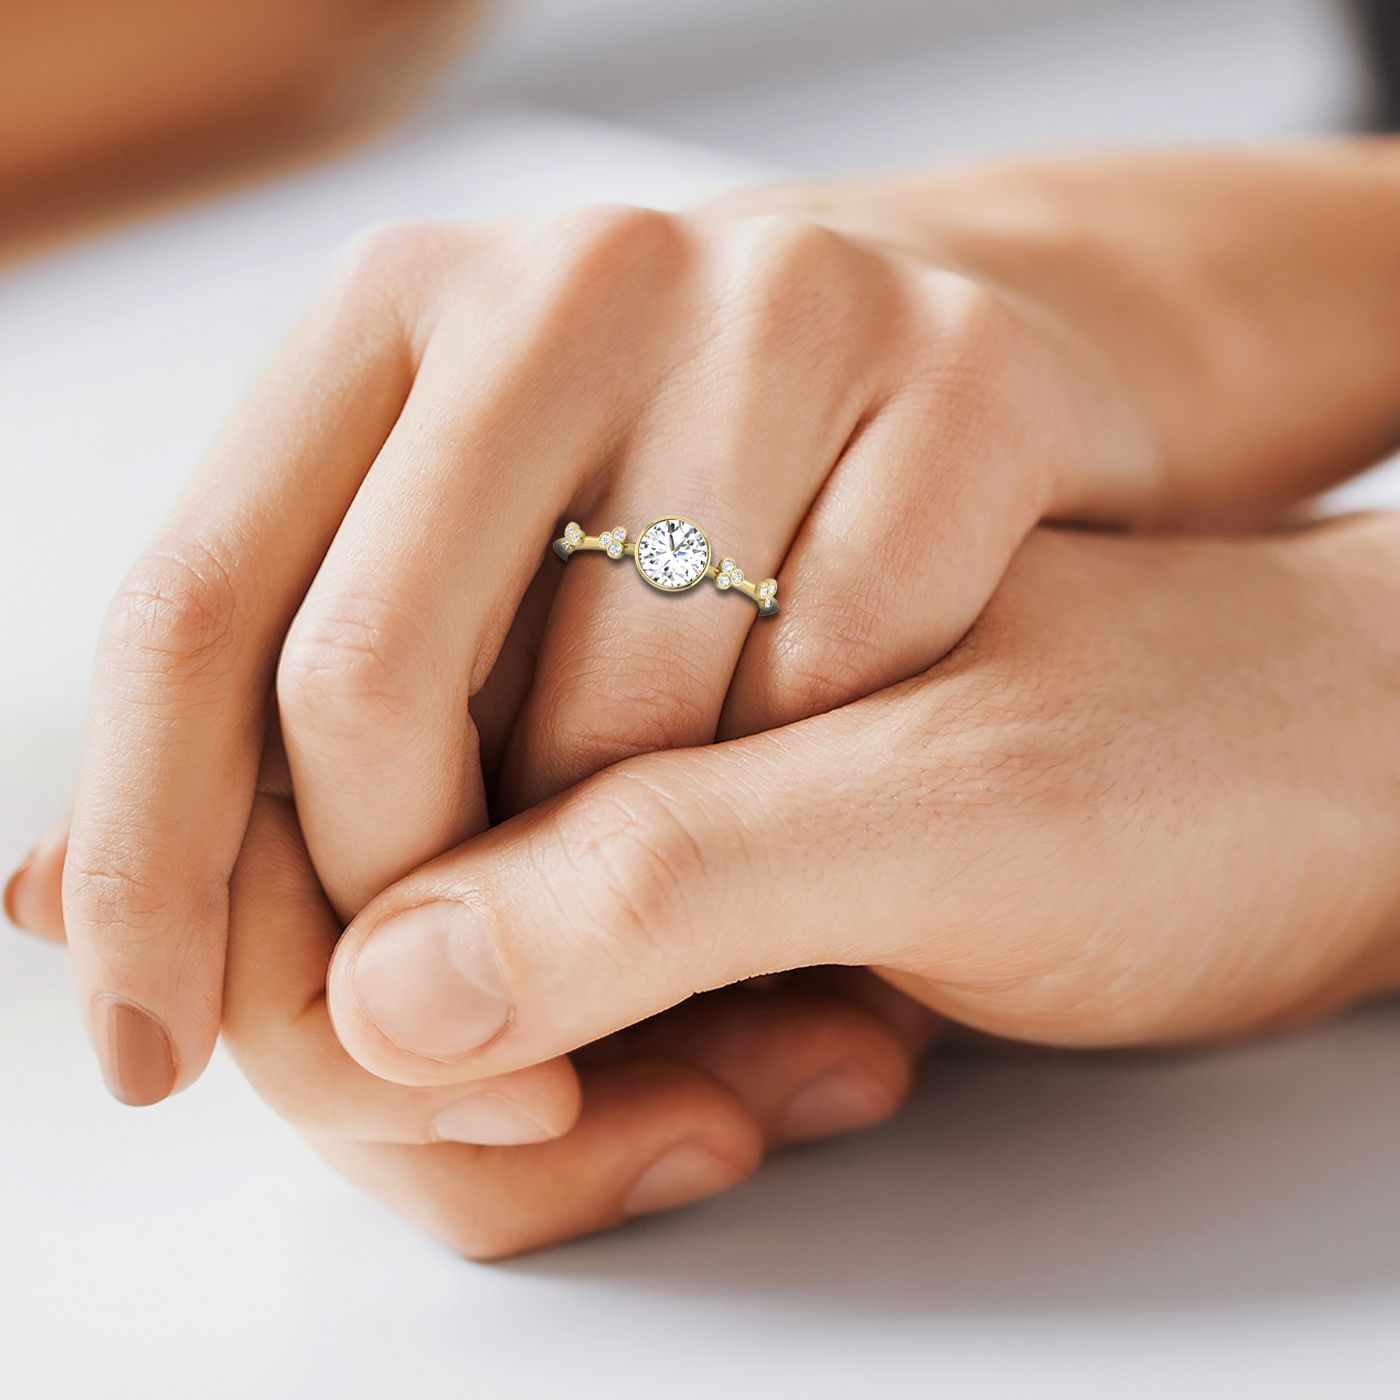 18ky Bezel Set Round Engagement Ring With 12 Clover Bezel Set Round Diamonds On Shank